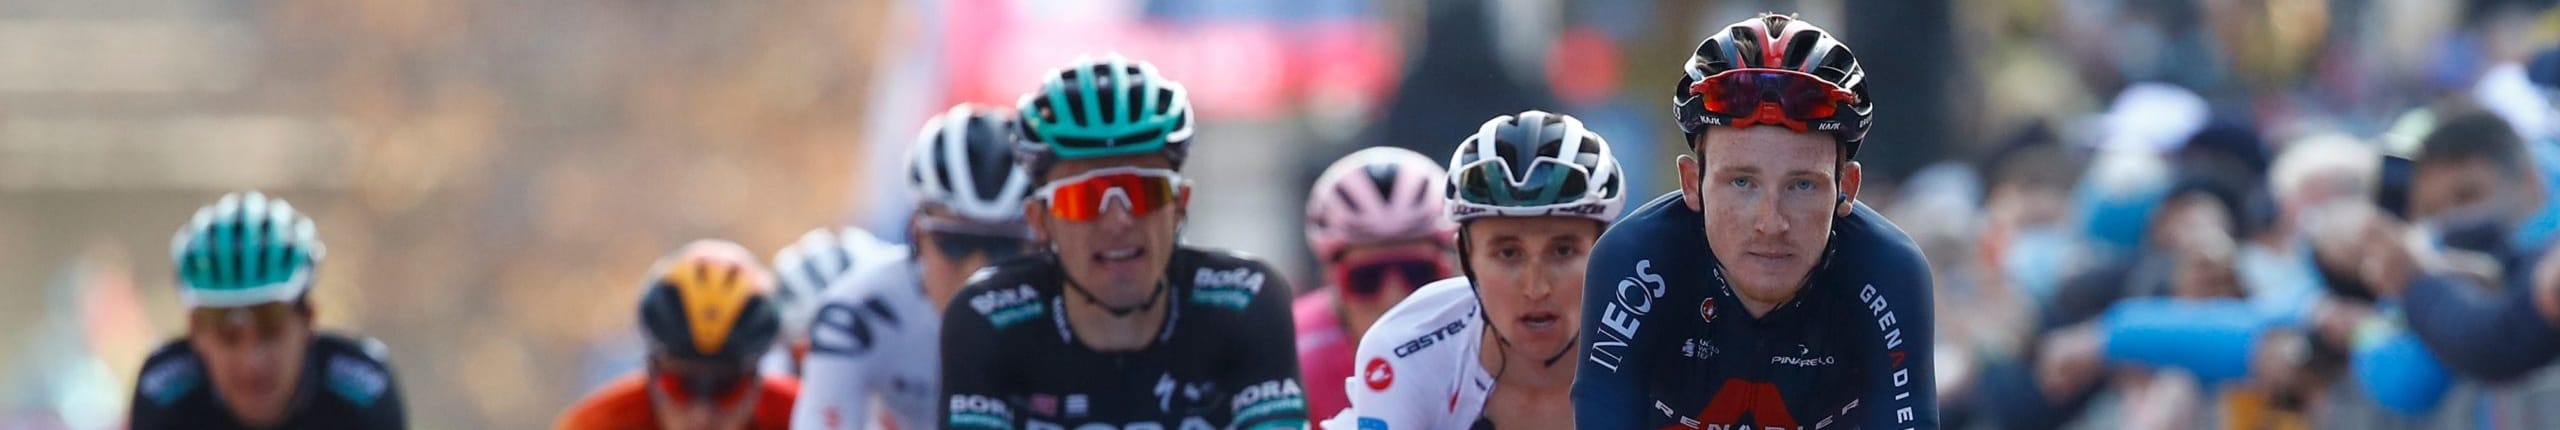 Giro d'Italia 2020, quote e favoriti per la tappa 20: Hart all'ultimo attacco